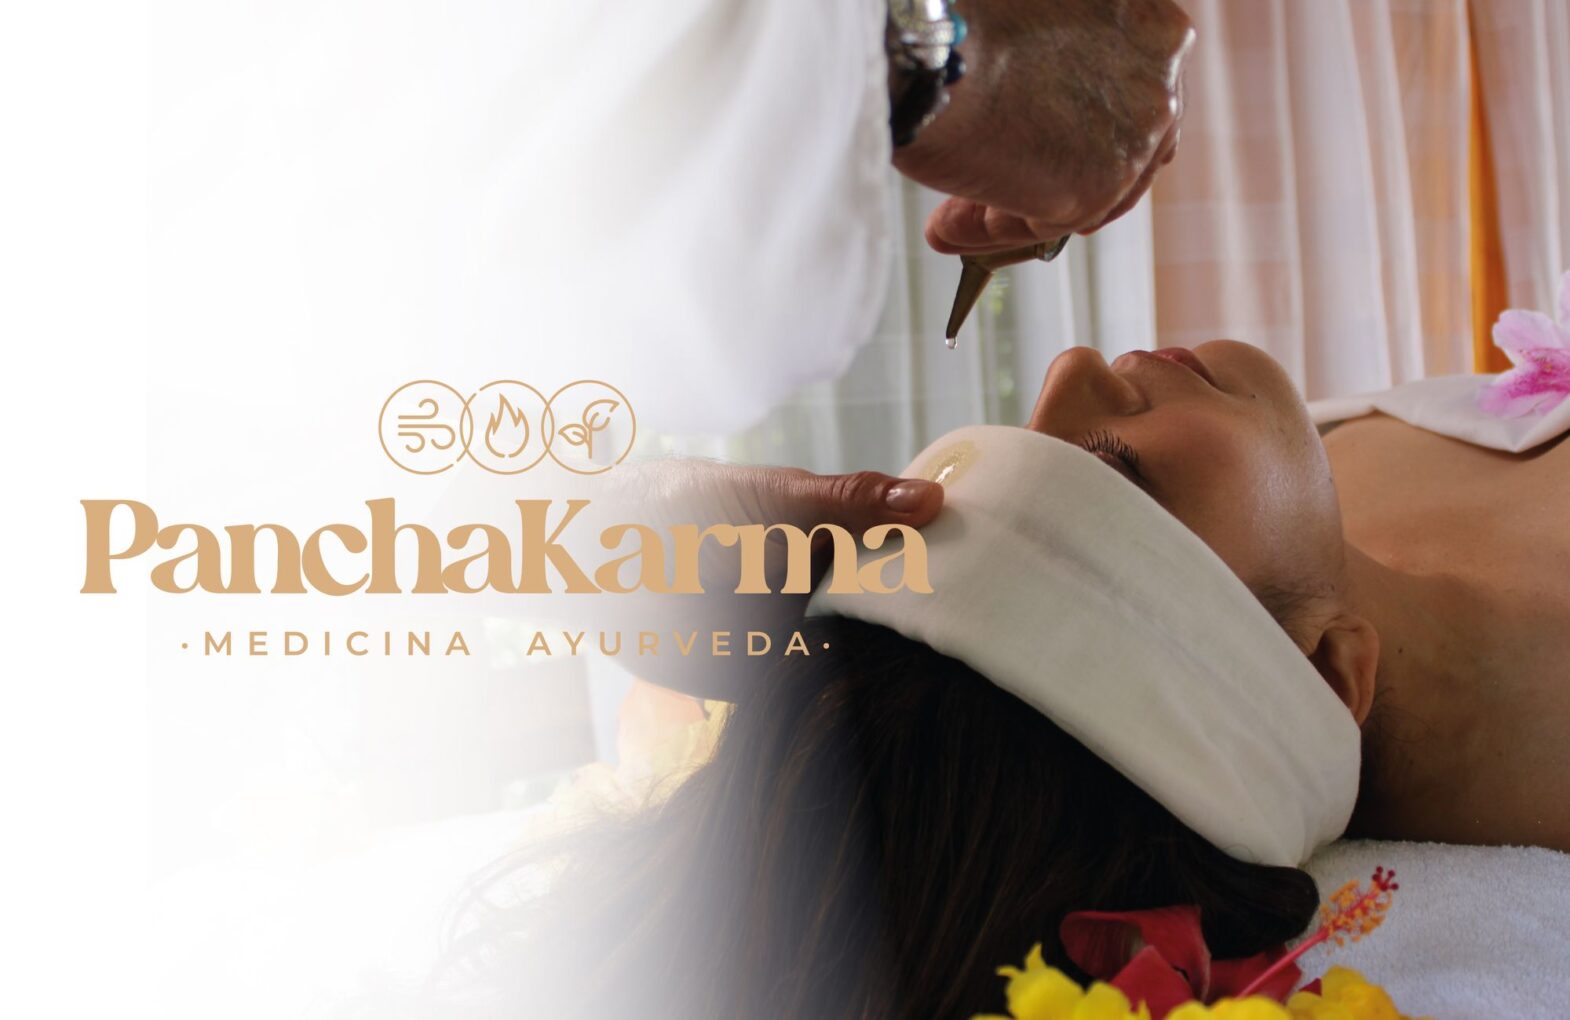 PanchaKarma, la nueva apuesta del Parque de la Salud